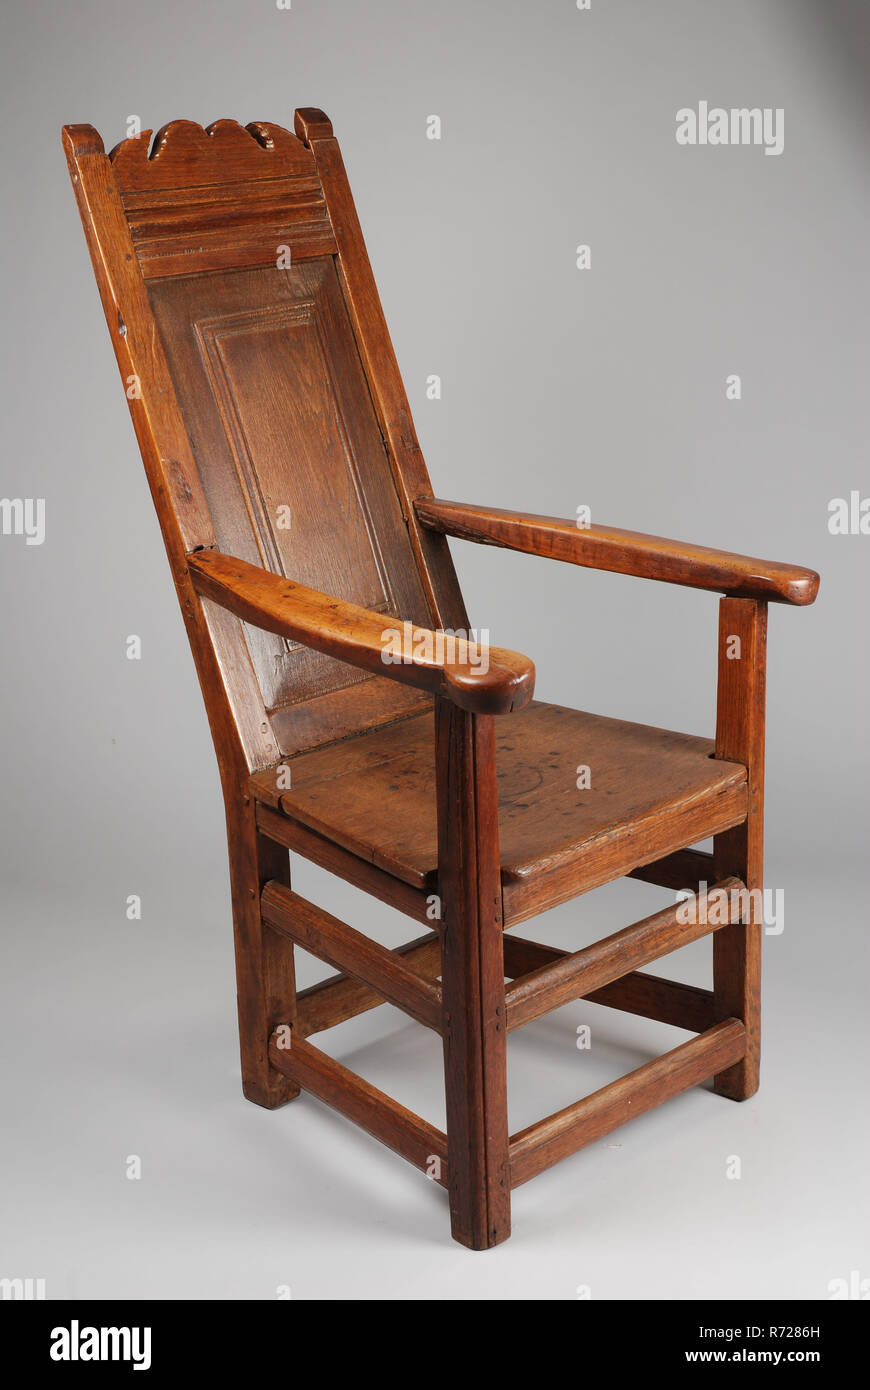 Eiche Stuhl Stuhl Mobel Mobel Interior Design Eiche Holz